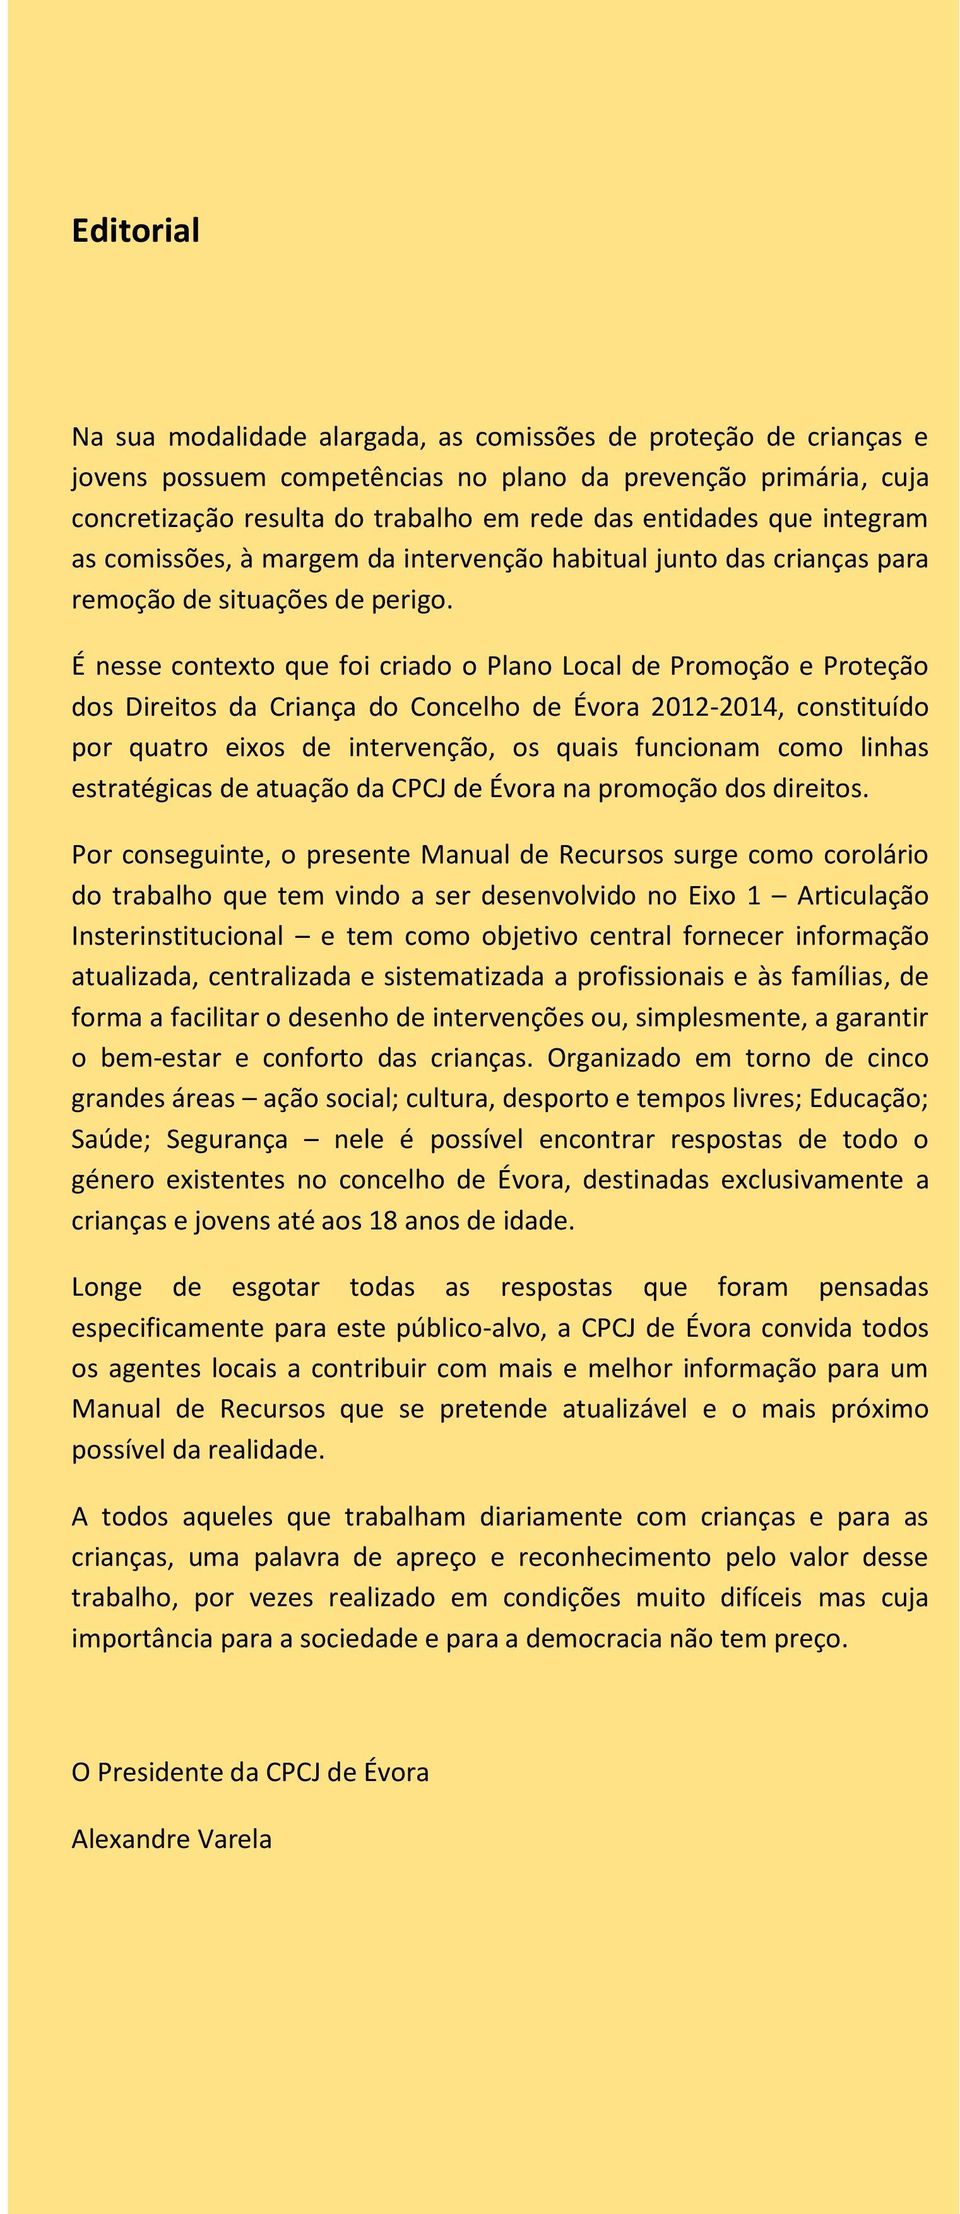 É nesse contexto que foi criado o Plano Local de Promoção e Proteção dos Direitos da Criança do Concelho de Évora 2012-2014, constituído por quatro eixos de intervenção, os quais funcionam como